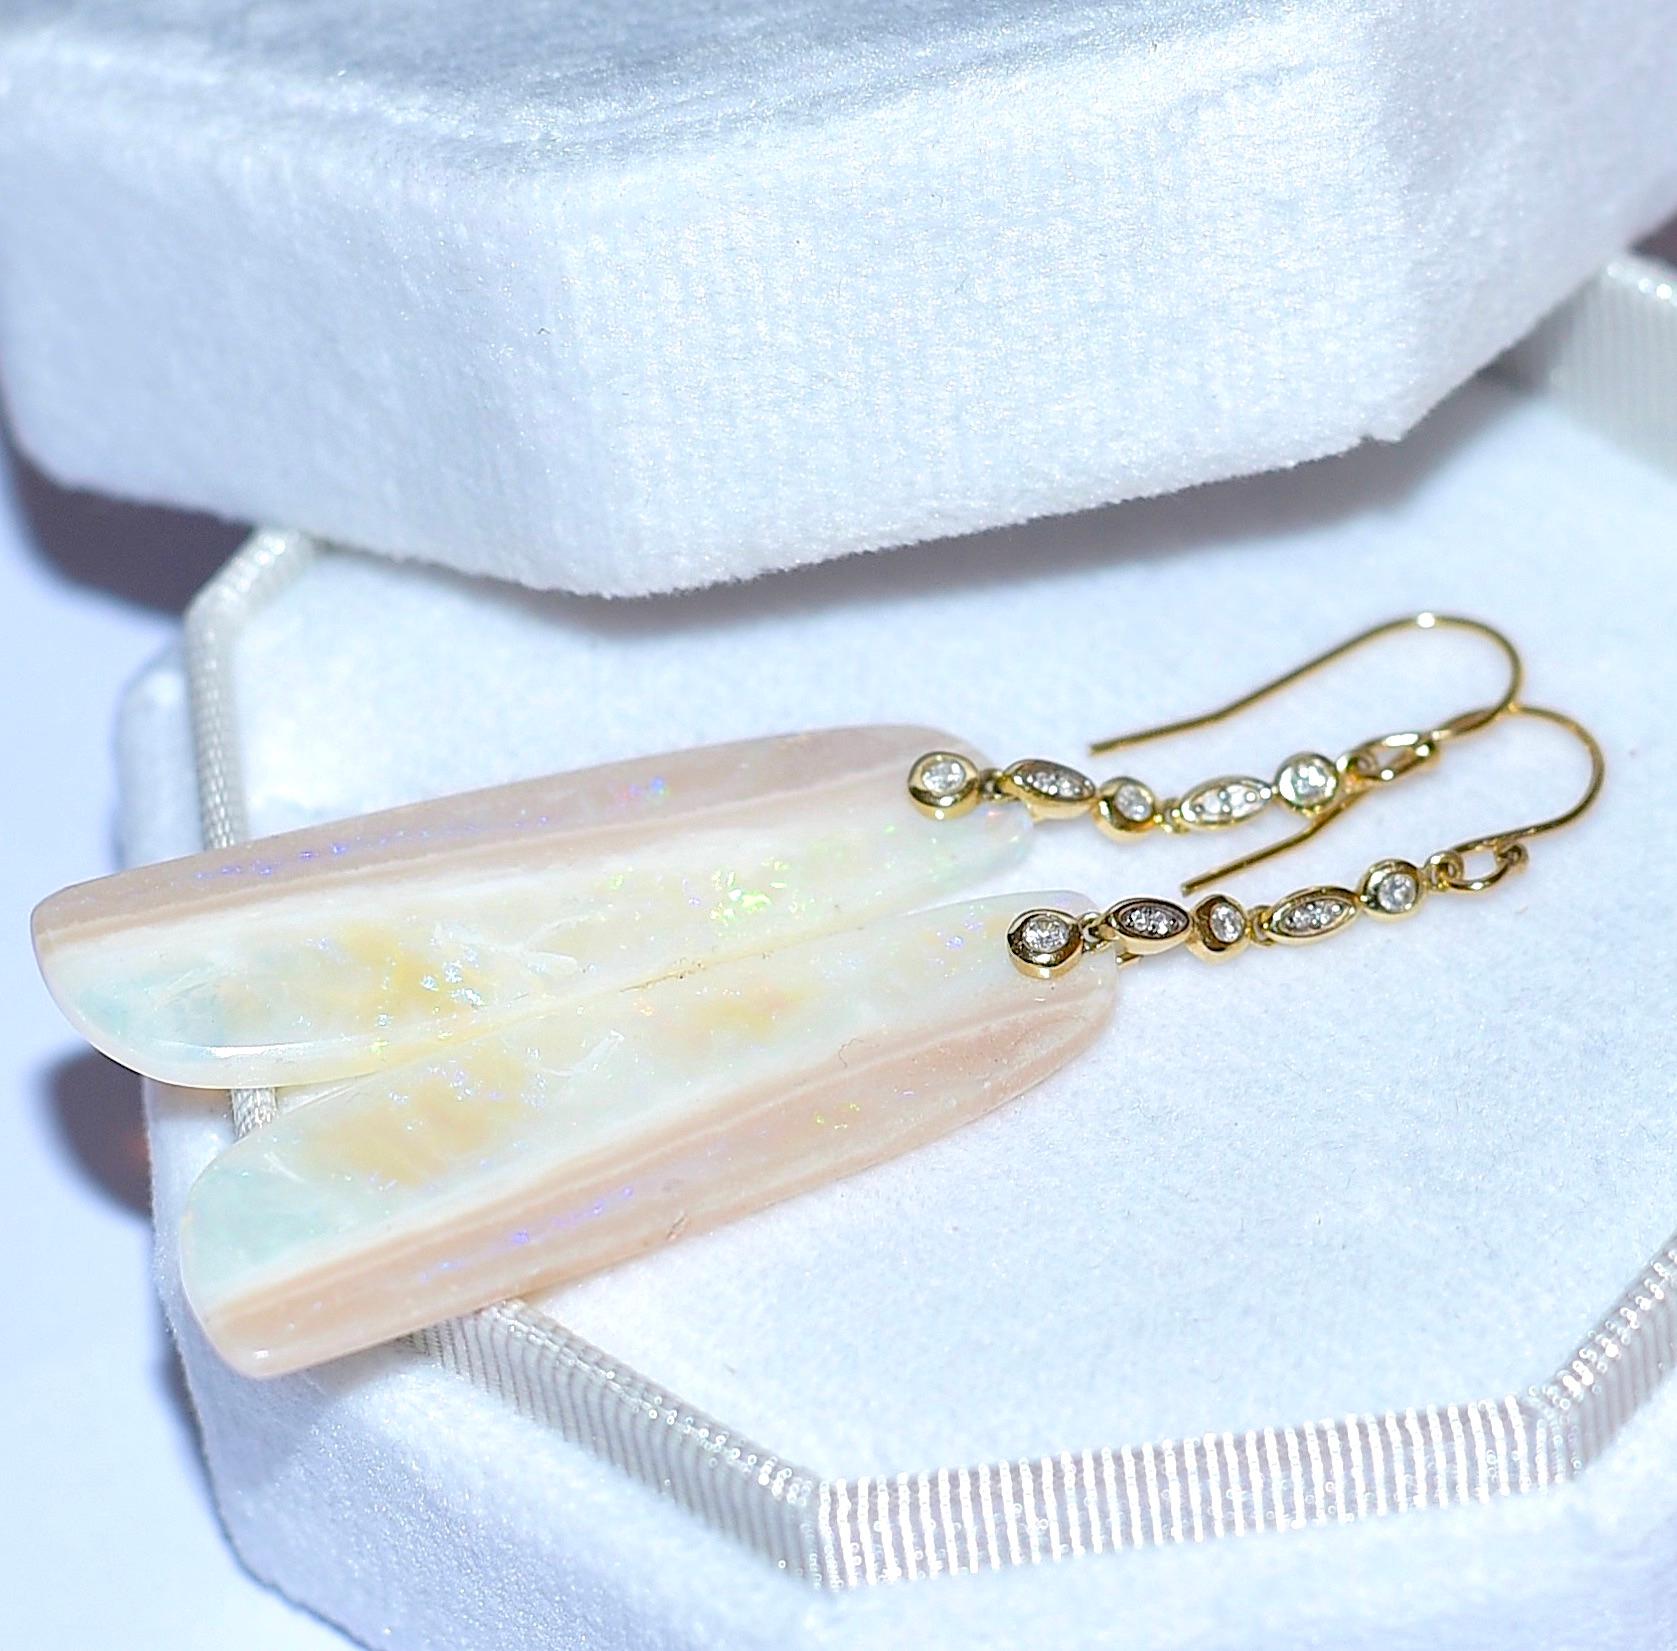 Oval Cut Long Australian White Opal Earrings with 14K Solid Yellow Gold, Diamonds